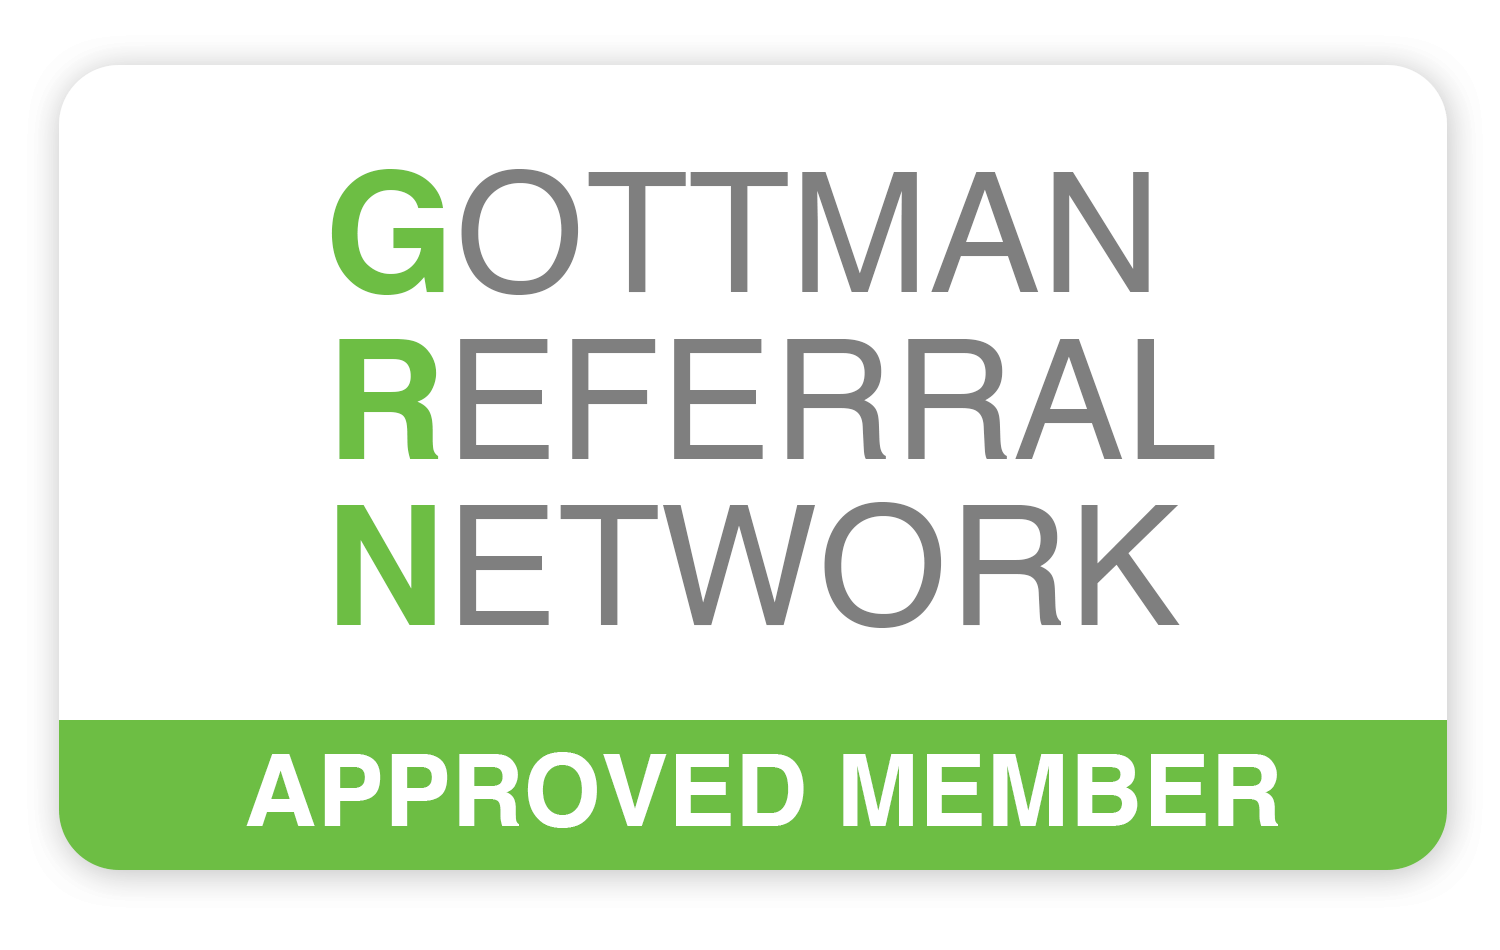 Ruairí Osborne's profile on the Gottman Referral Network